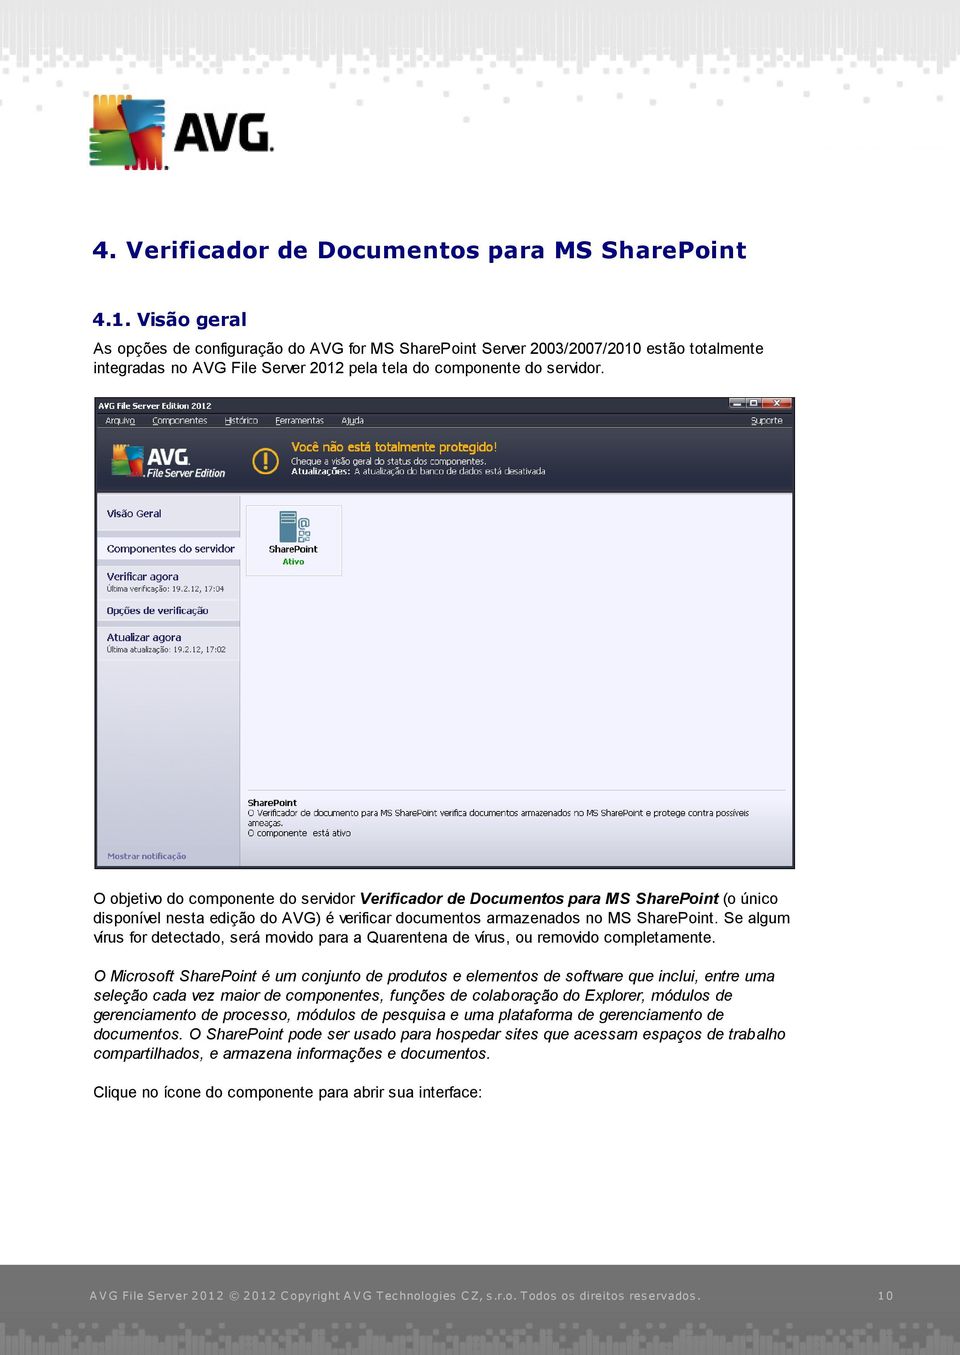 O objetivo do componente do servidor Verificador de Documentos para MS SharePoint (o único disponível nesta edição do AVG) é verificar documentos armazenados no MS SharePoint.